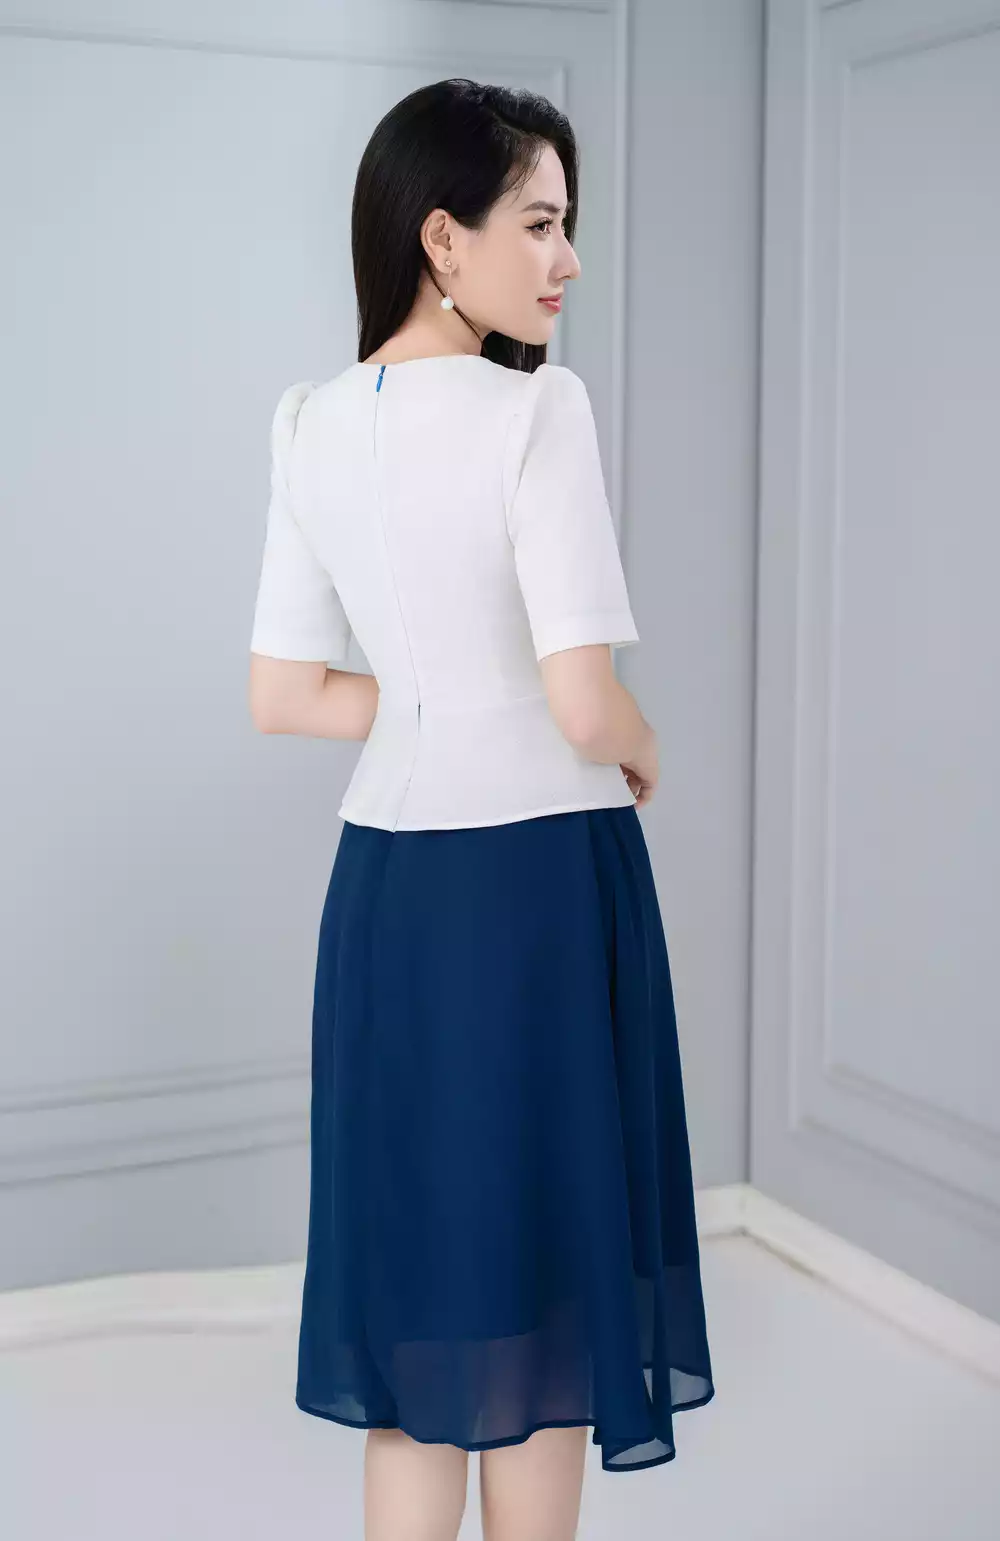 Đầm peplum trắng phối chân voan xanh | Thương hiệu thời trang công sở cho  phái đẹp